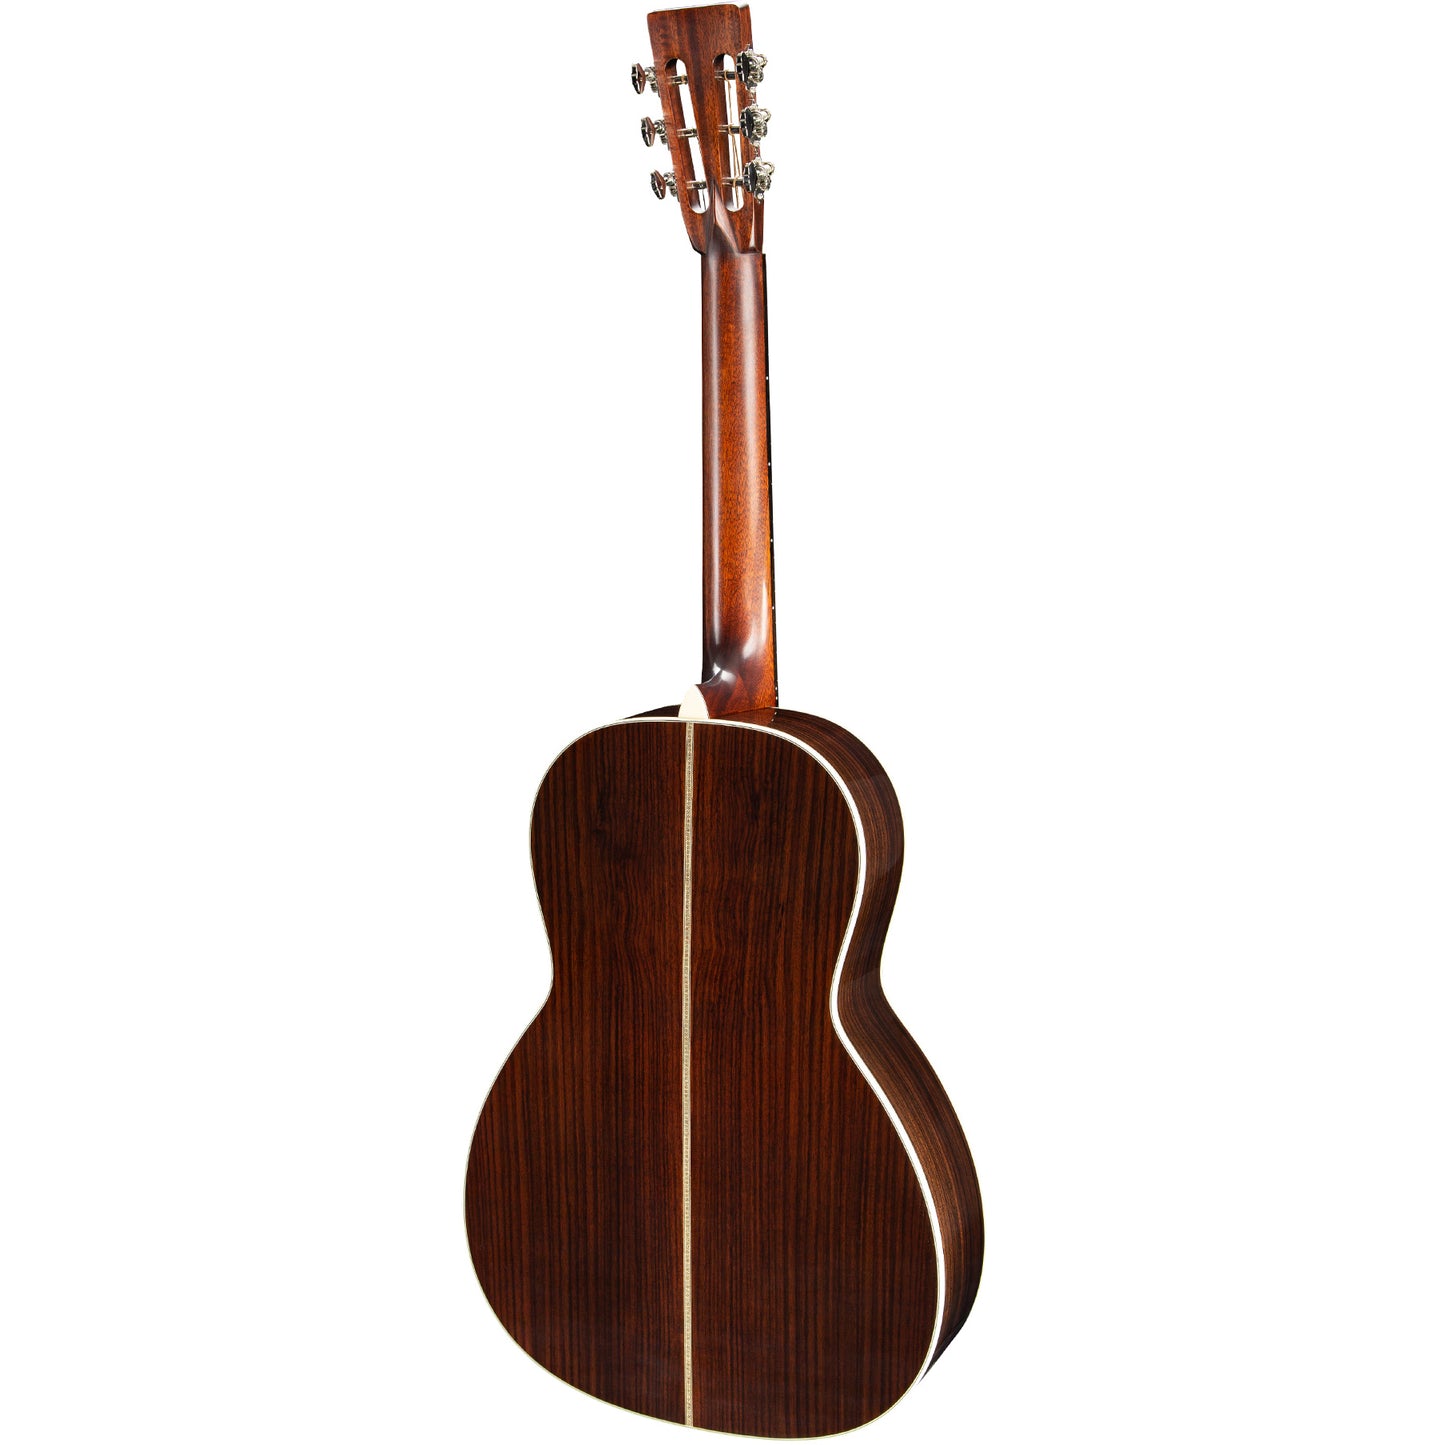 Eastman E20OO Adirondack/Rosewood Acoustic Guitar - Natural